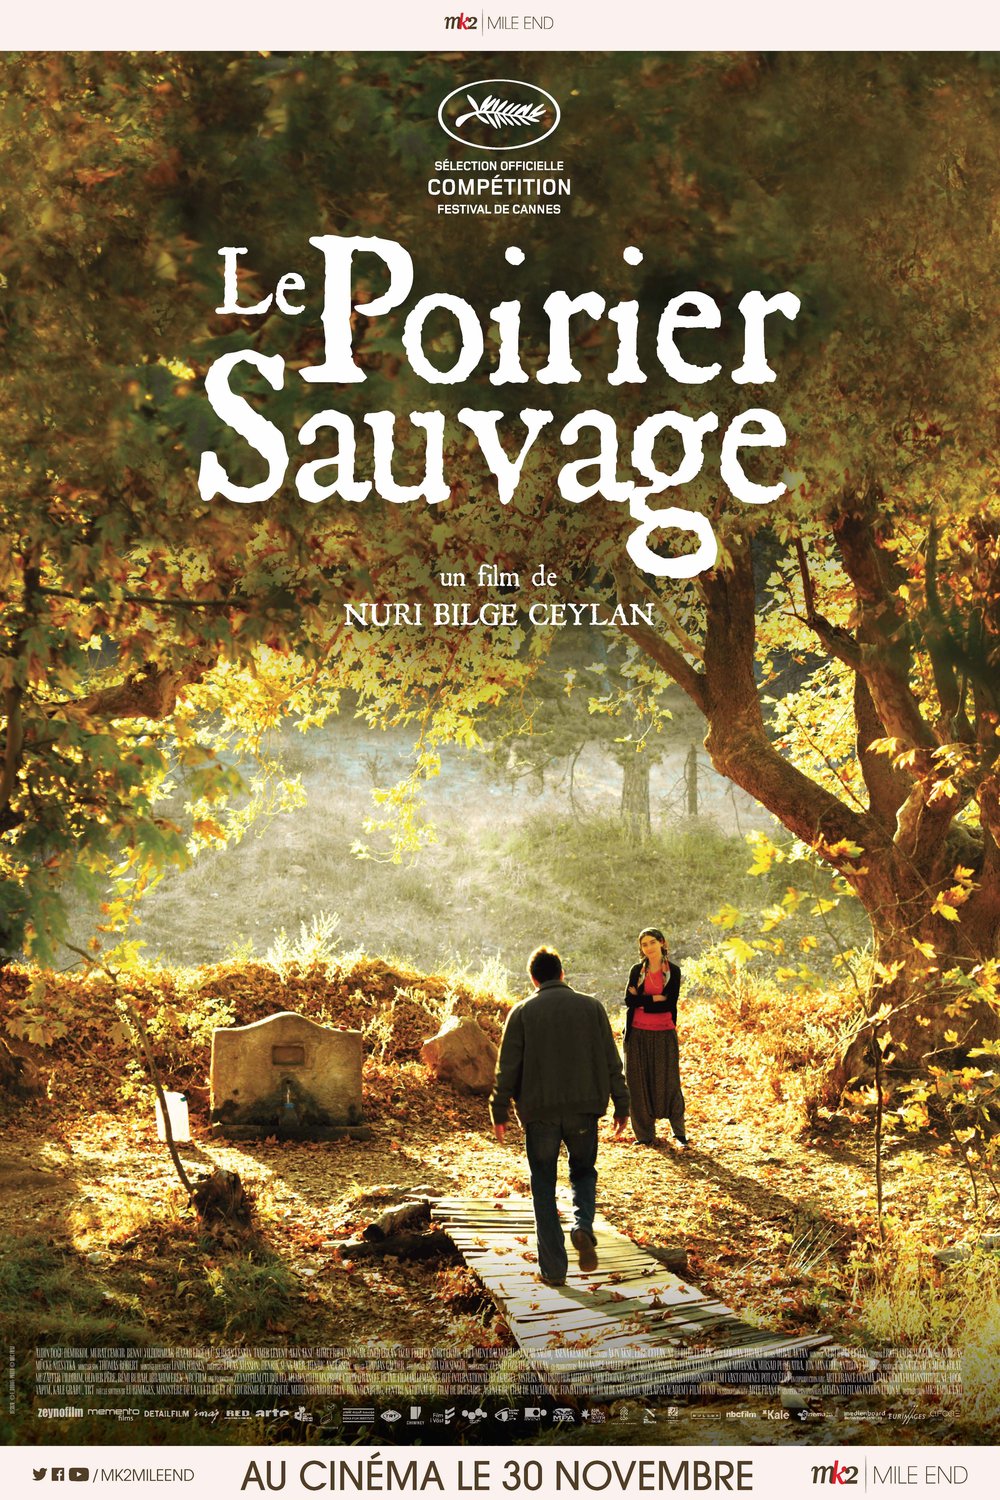 L'affiche du film Le Poirier sauvage